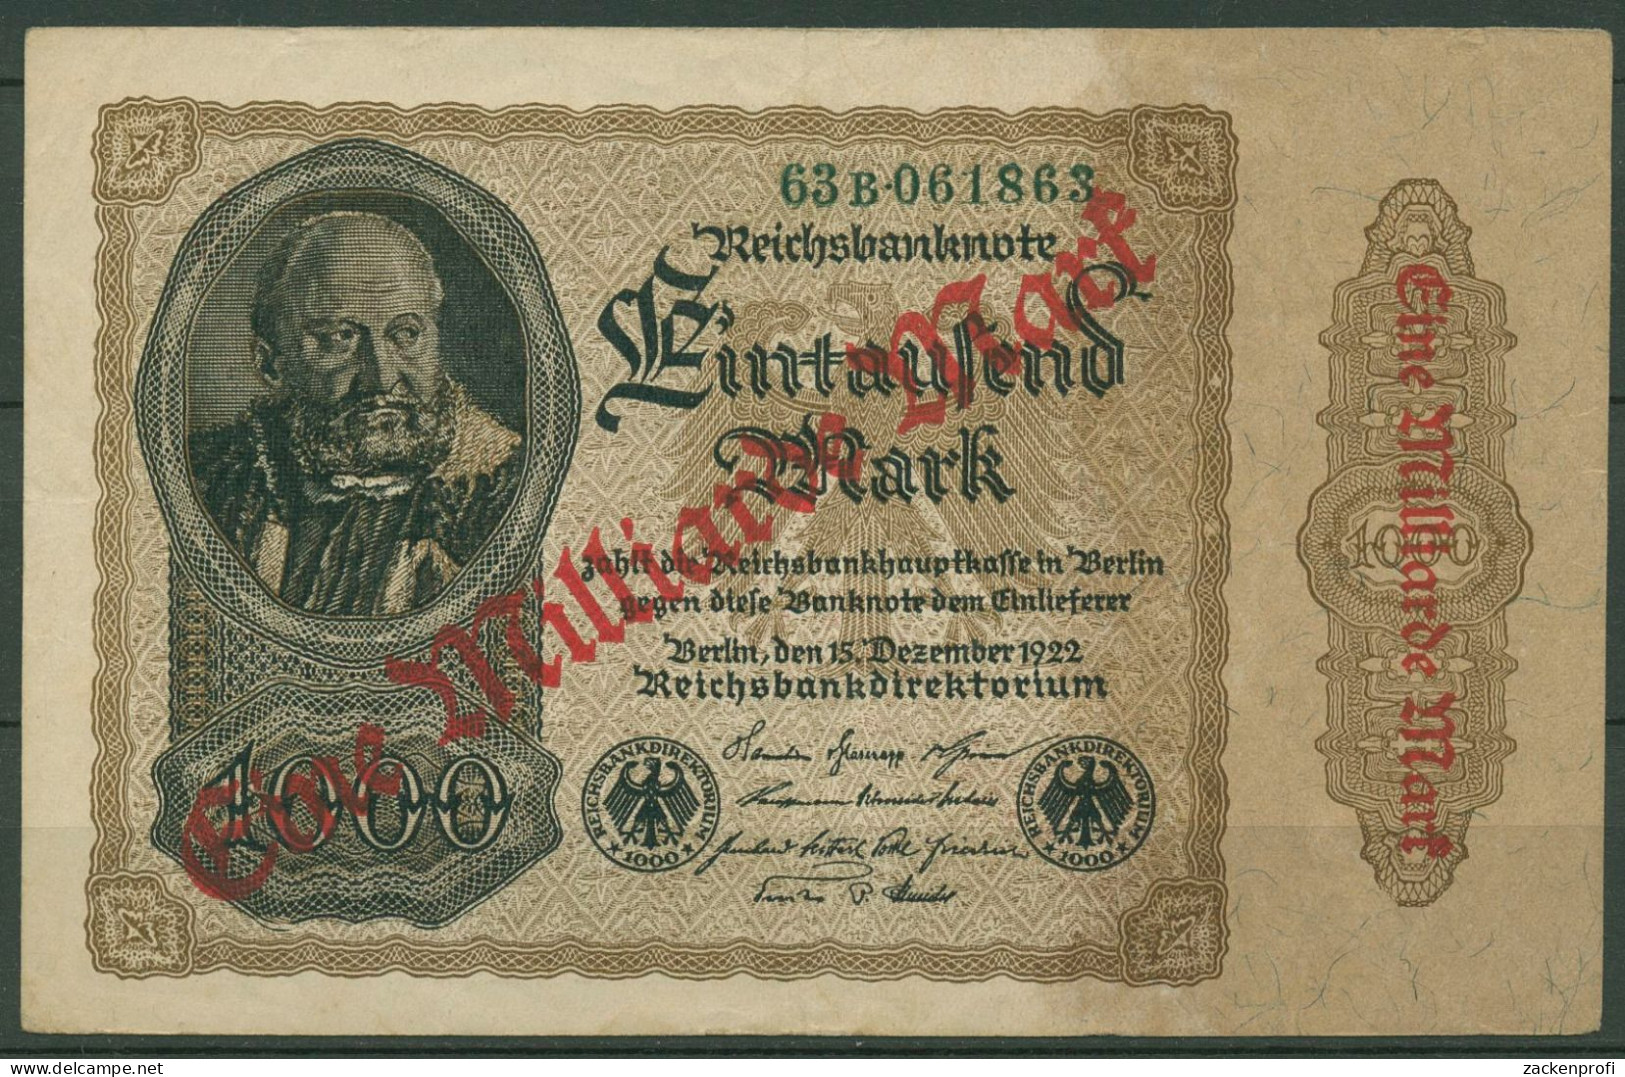 Dt. Reich 1 Milliarde Mark 1923, DEU-126b FZ B, Leicht Gebraucht (K1151) - 1 Miljard Mark